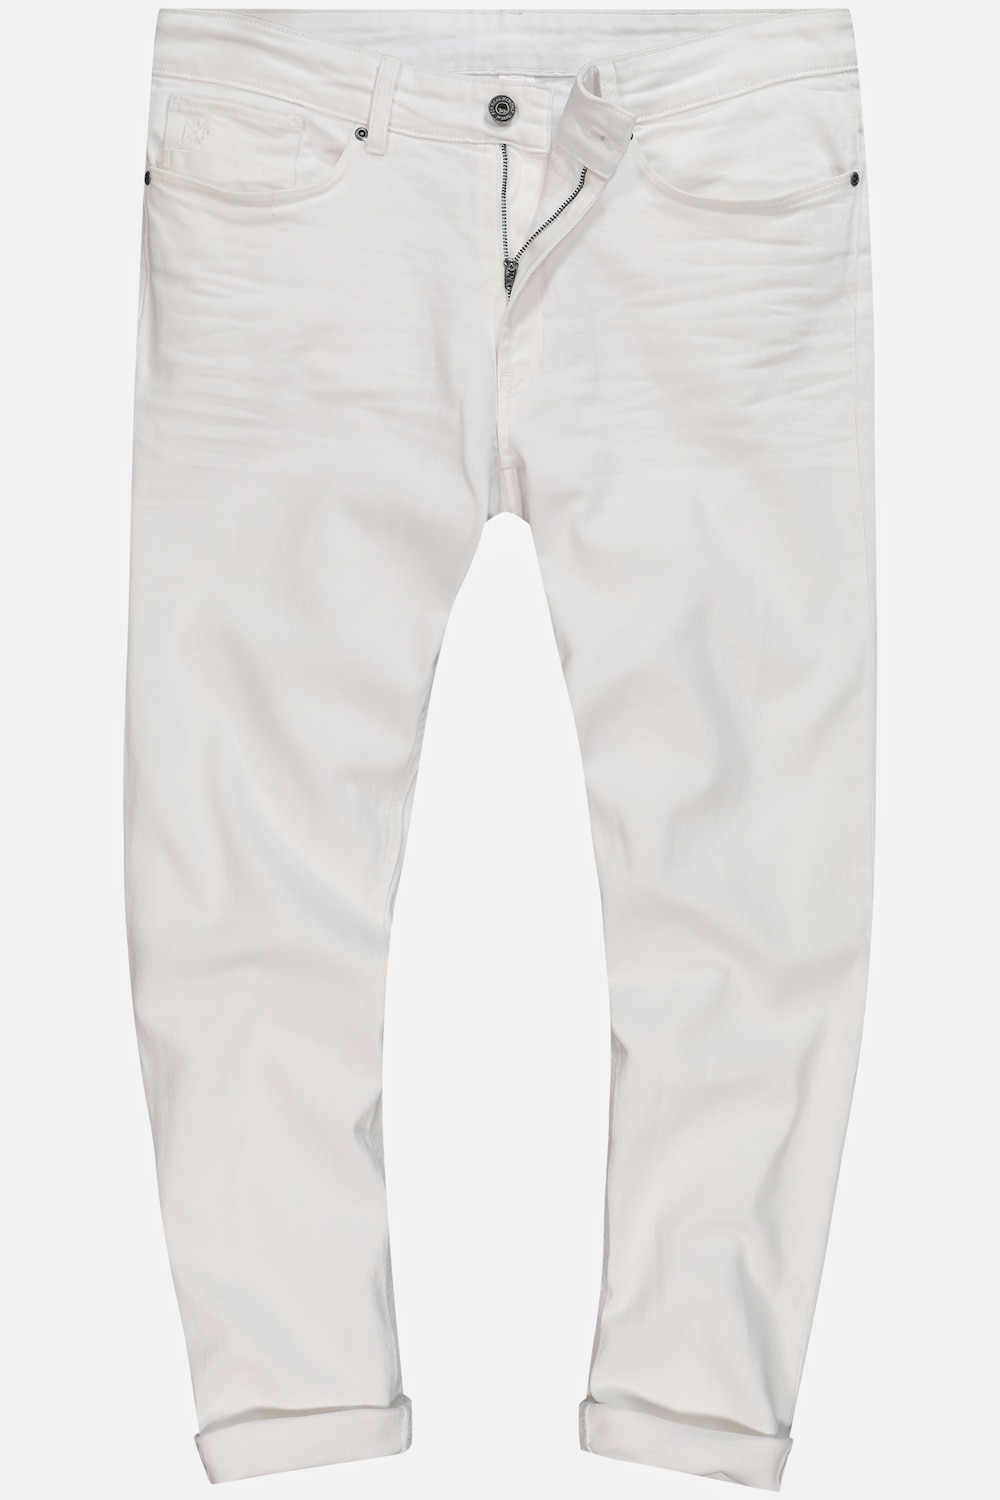 Grote Maten Jeans, Heren, wit, Maat: 126, Katoen, JP1880